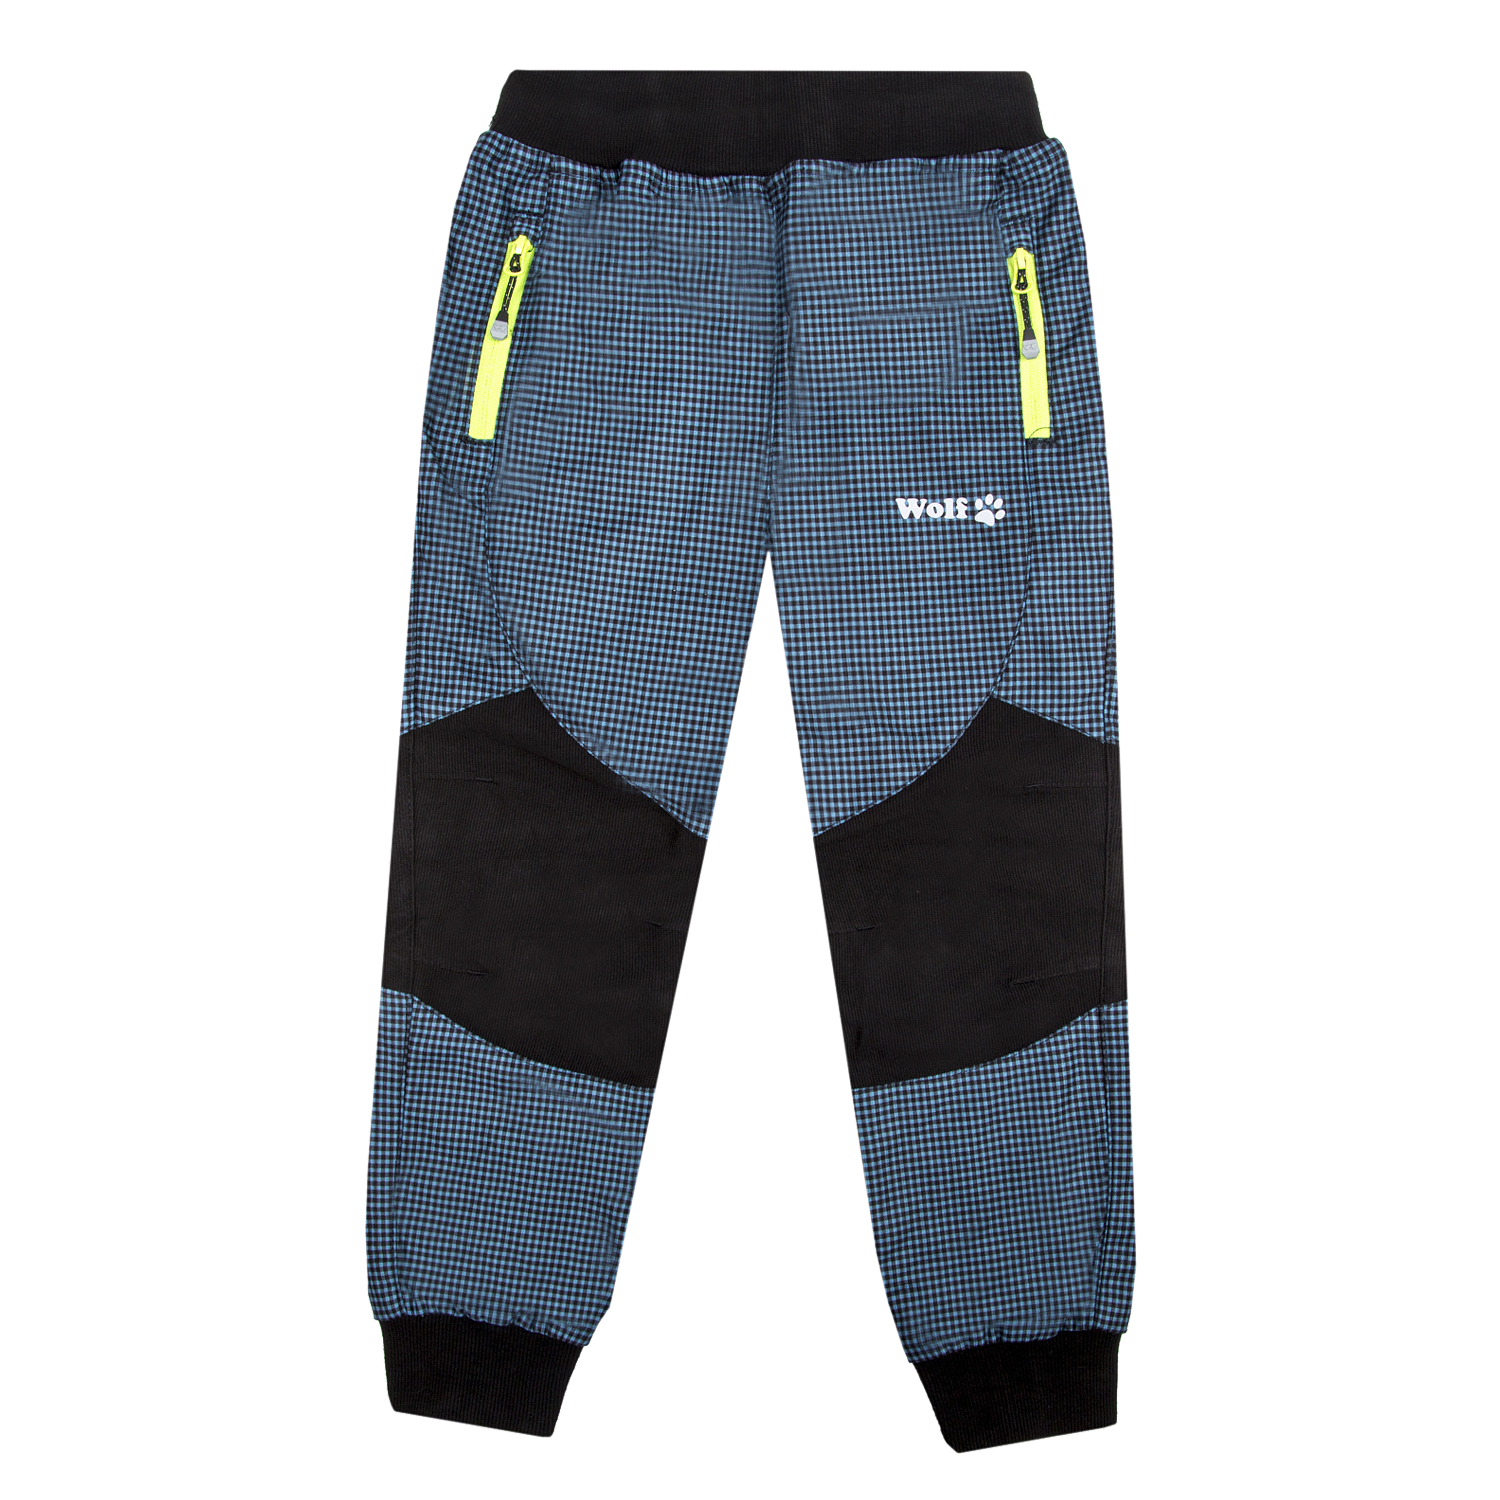 Chlapecké outdoorové kalhoty - Wolf T2251, petrol / signální zipy Barva: Petrol, 